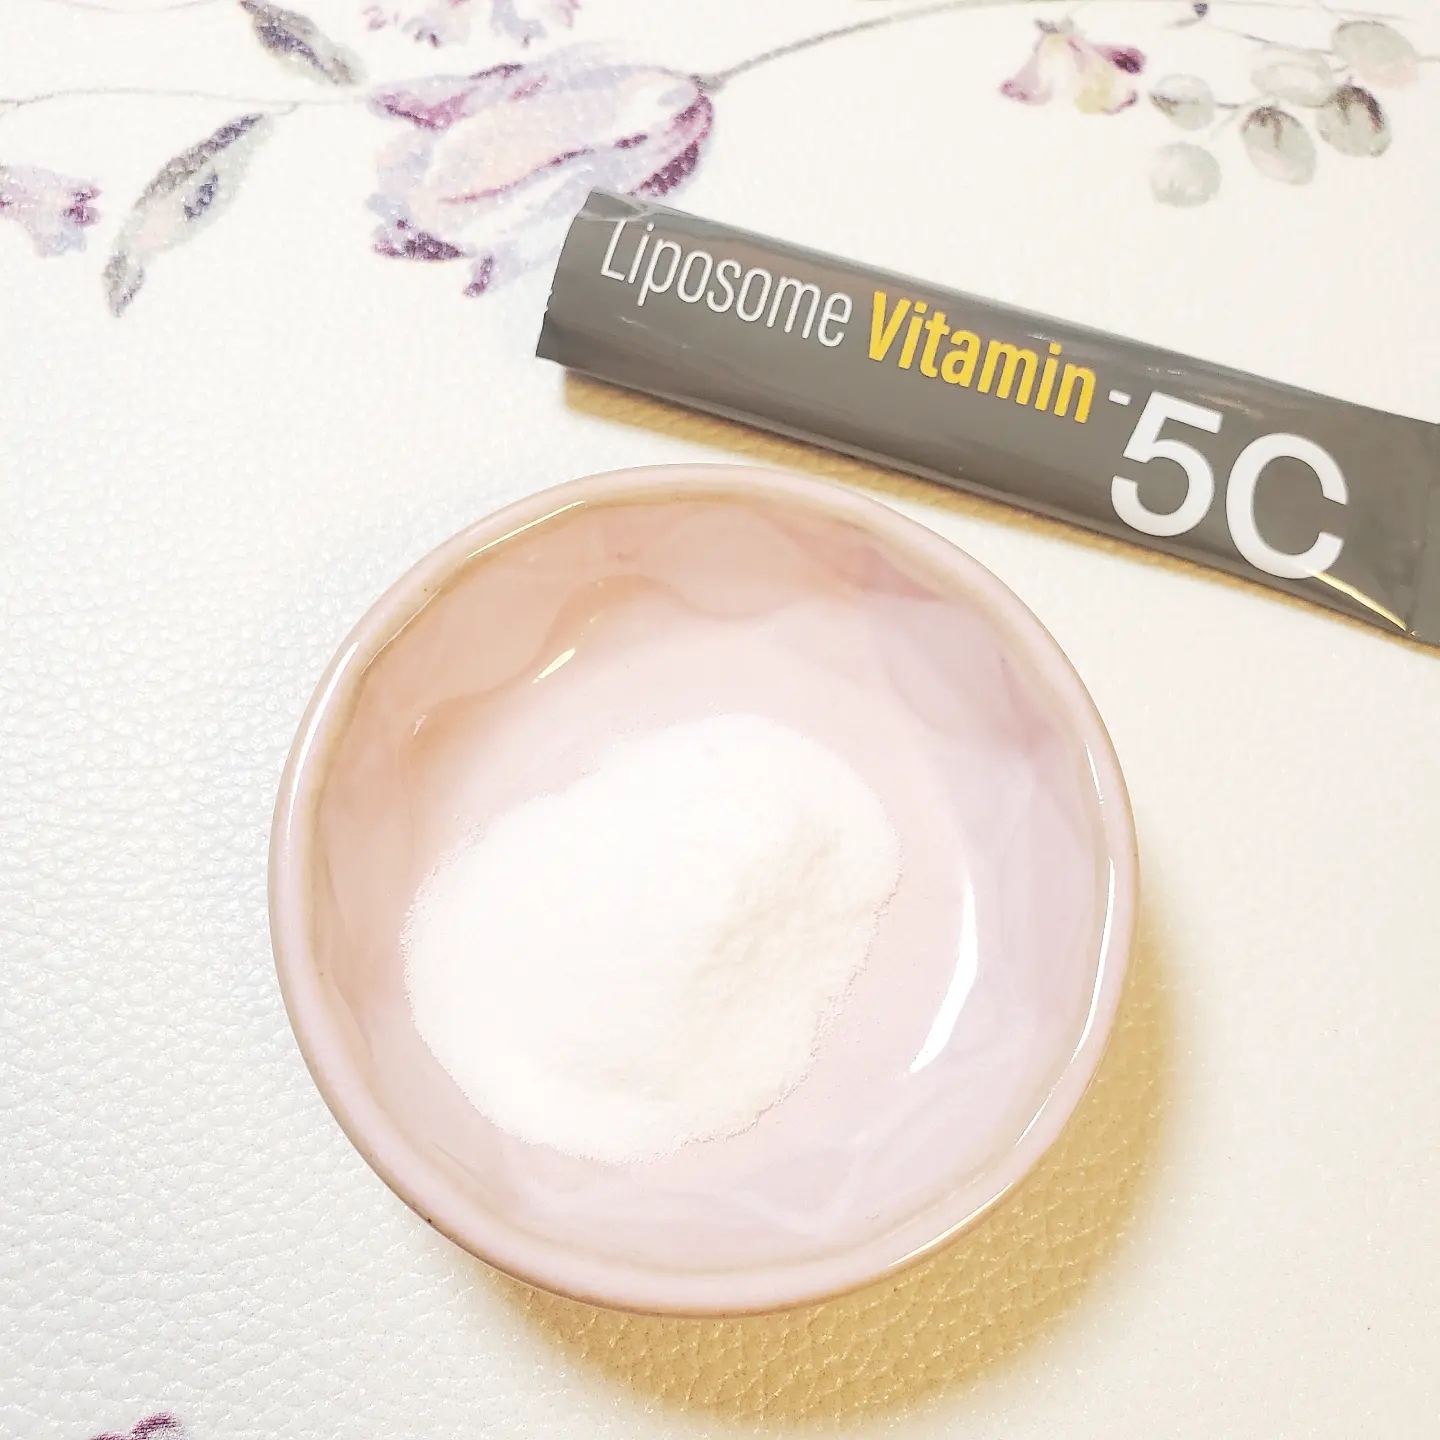 Liposome Vitamin - 5C（リポソームビタミン - ファイブシー）を使ったありんこさんのクチコミ画像2